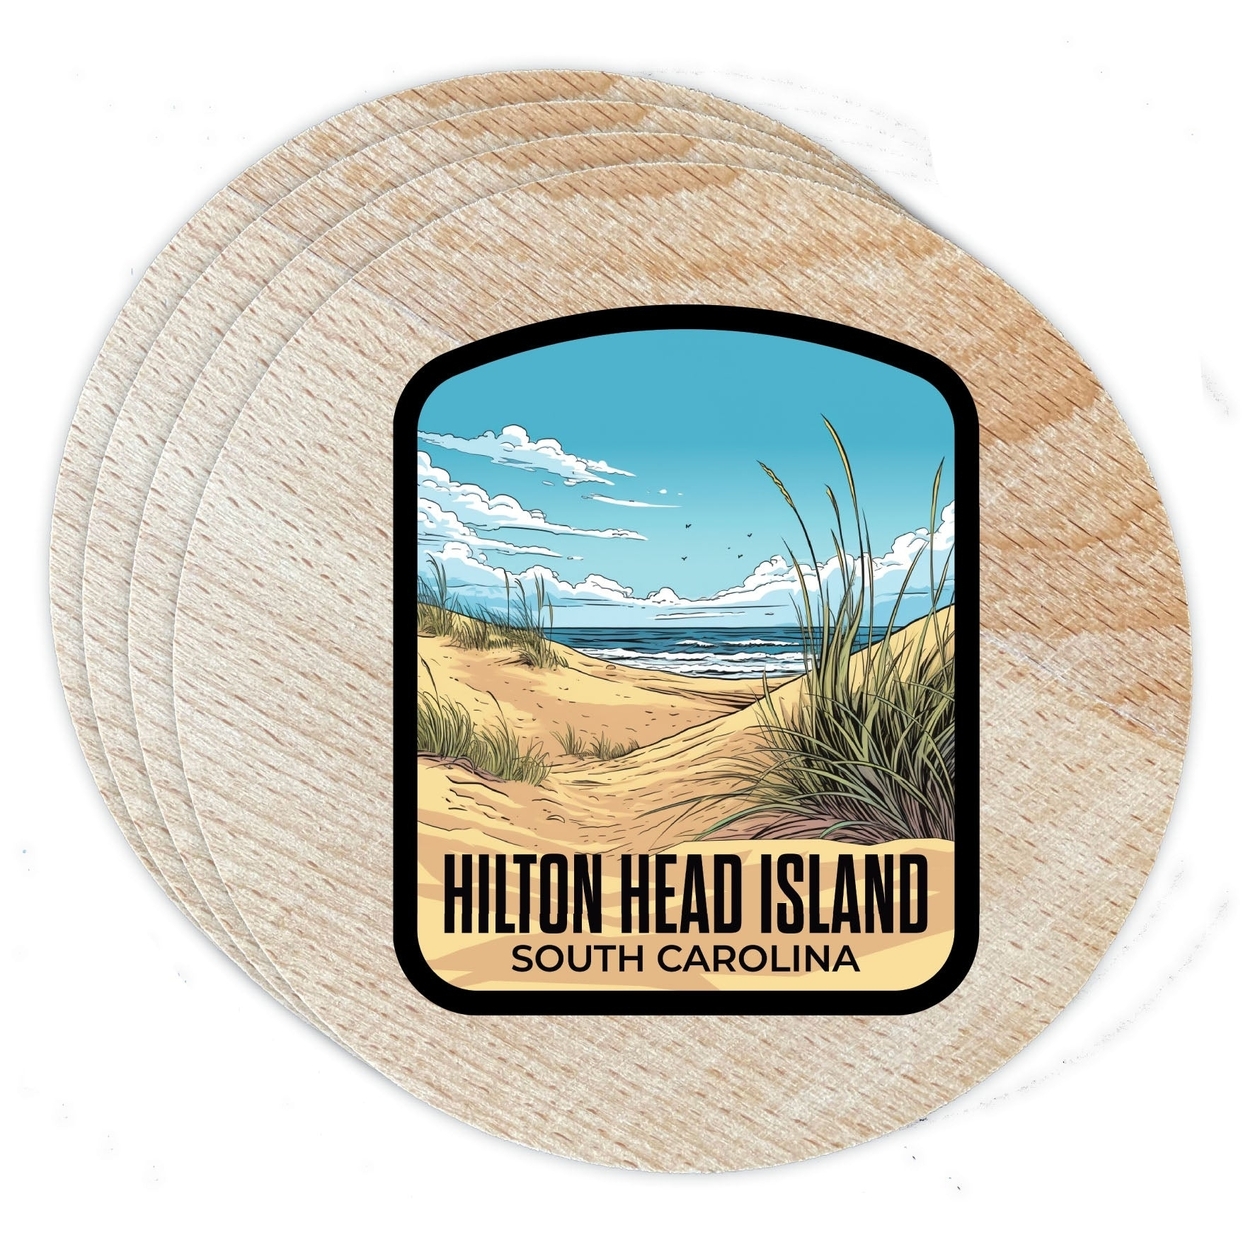 Hilton Head Island Design A Souvenir Coaster Wooden 3.5 X 3.5-Inch 4 Pack